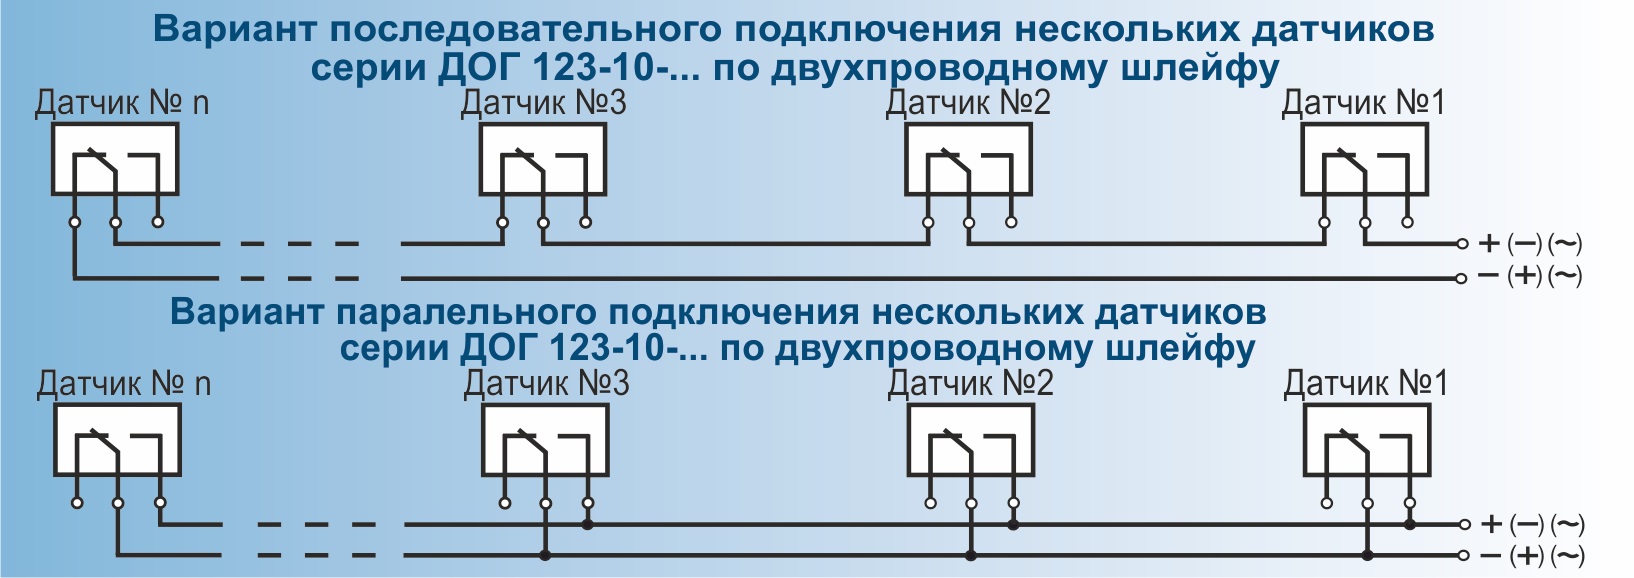 Подключение смк. Датчики ограждения герконовый дог 123-20. Схема подключения герконовых датчиков 220в. Датчик ограждения герконовый дог 123-10-4. Дог 123-10-НТ-4.